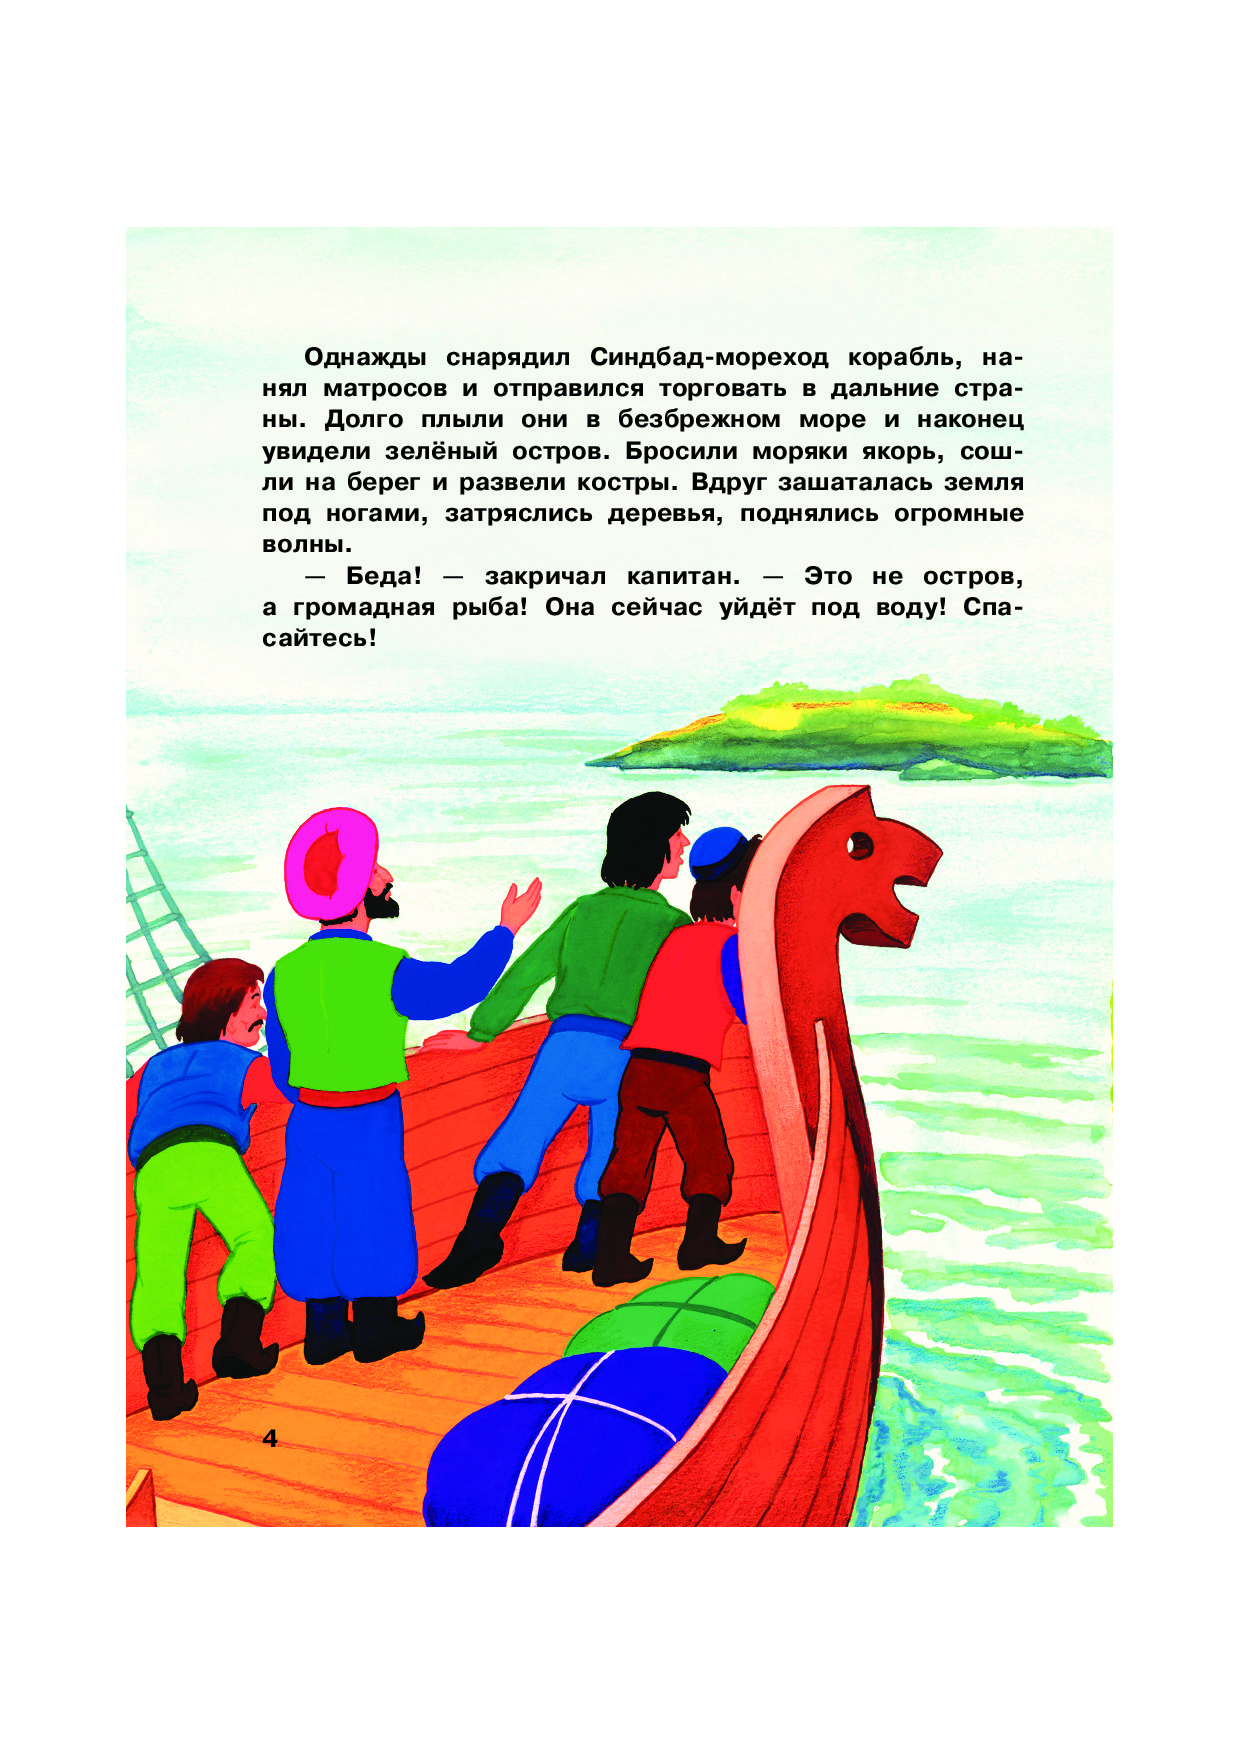 Иллюстрация к рассказу сказка о Синдбаде мореходе